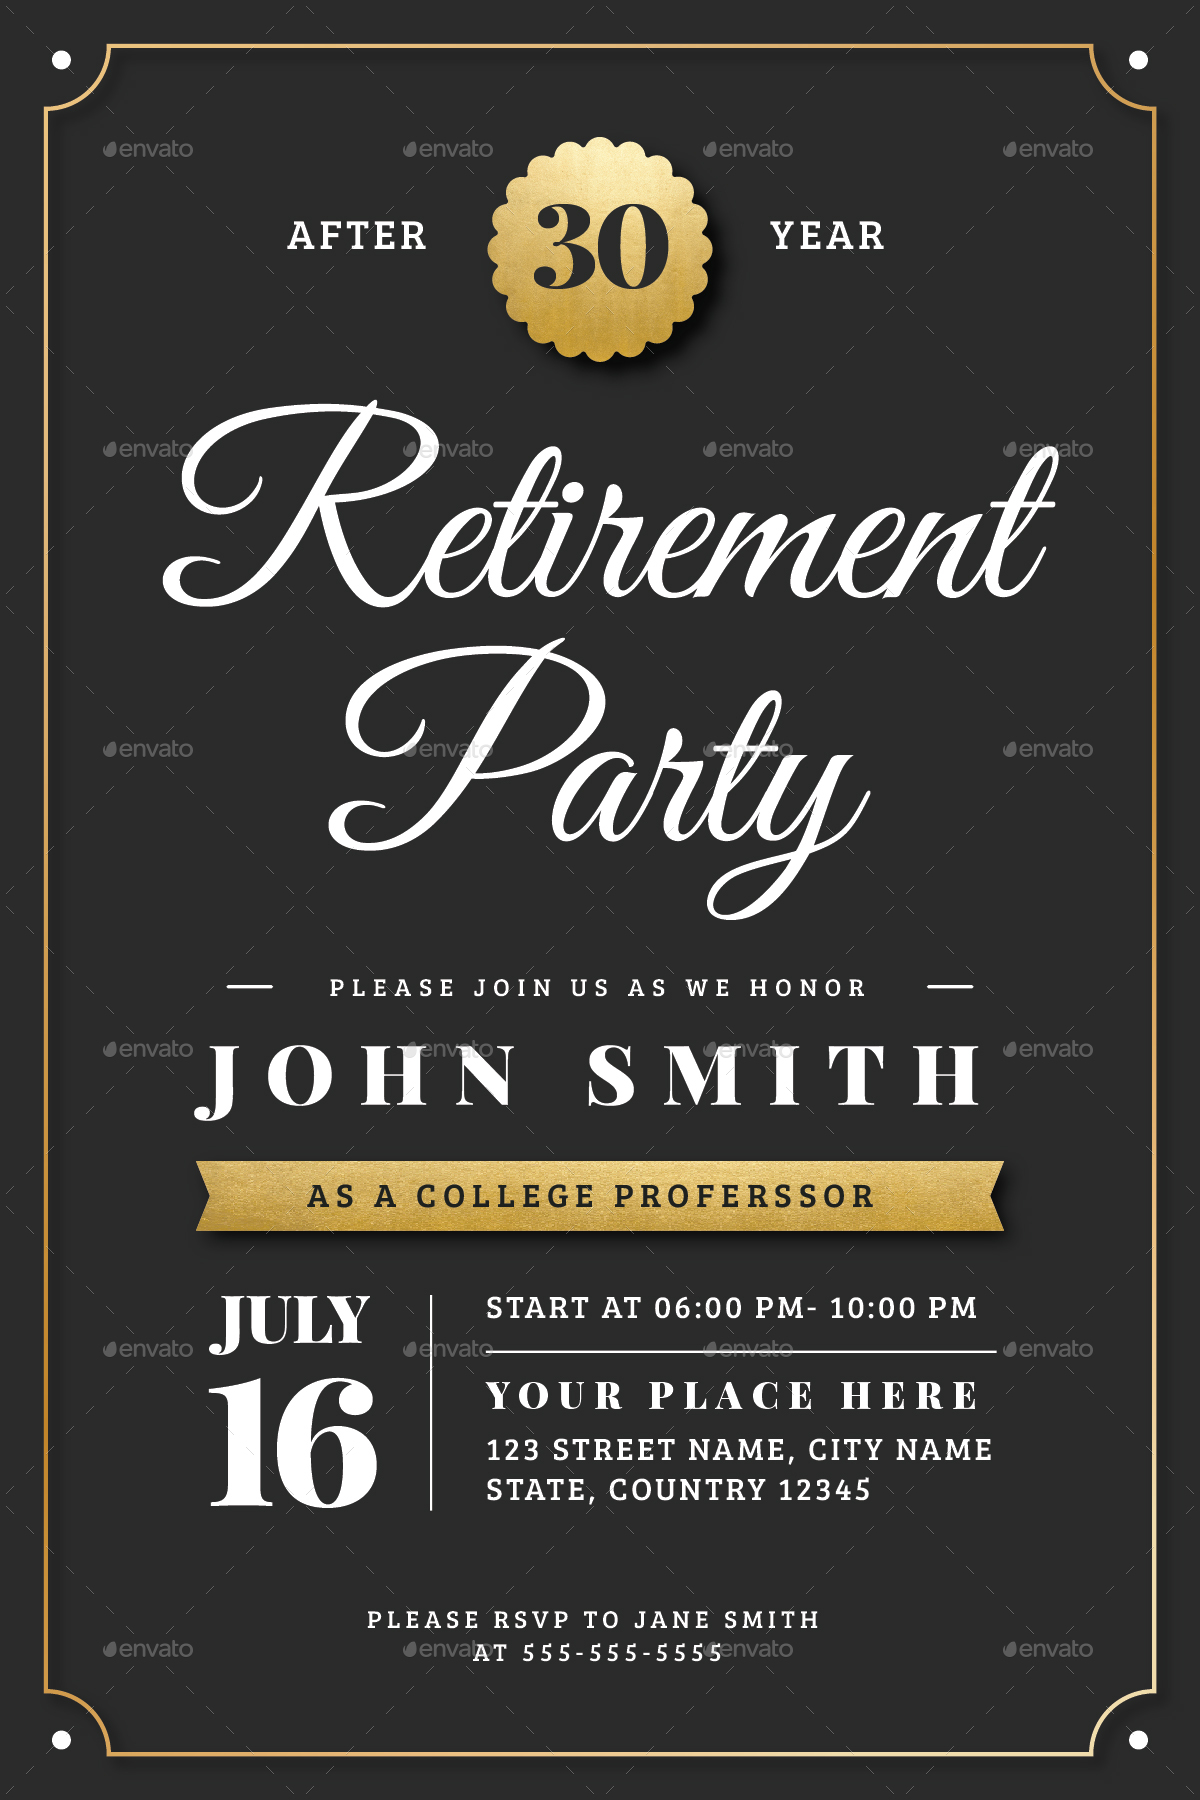 36-retirement-party-invite-template-pics-us-invitation-template